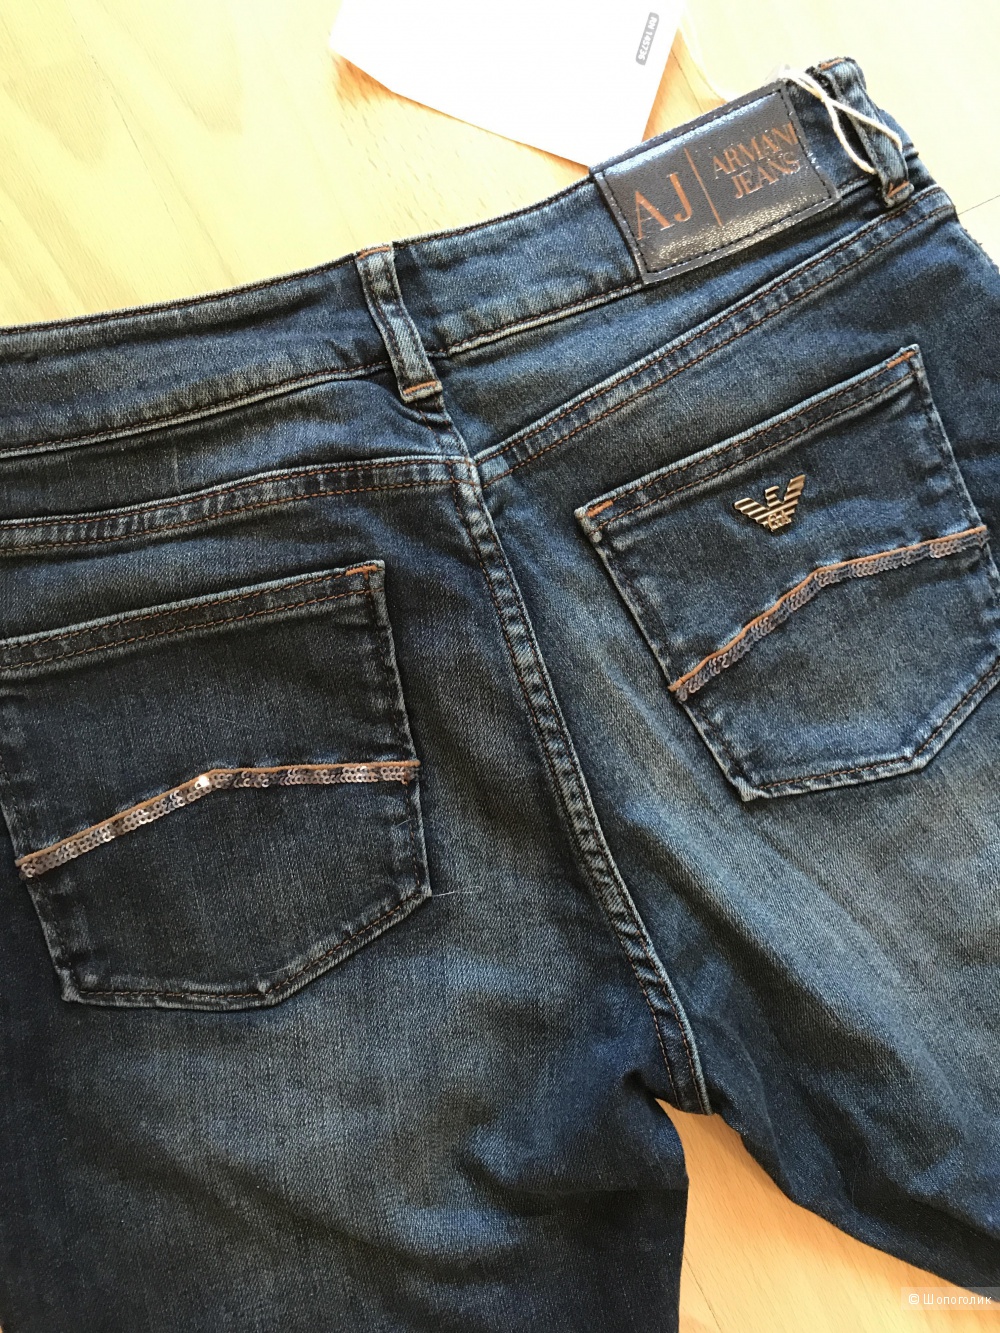 Джинсы Armani Jeans, размер 29